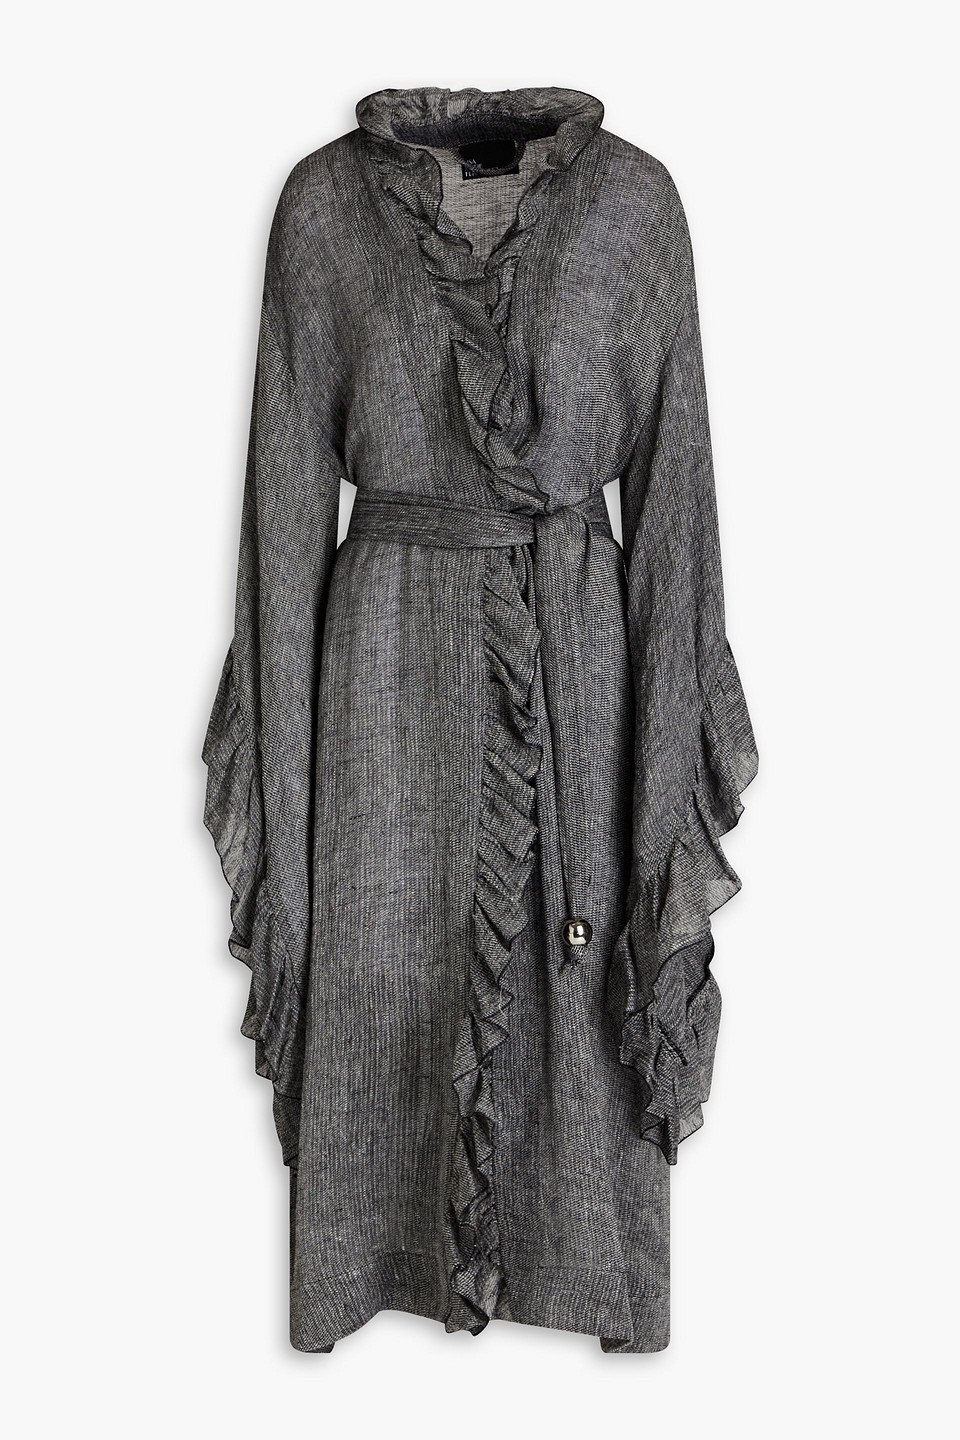 LISA MARIE FERNANDEZ Anita Ruffled Linen-Blend Robe in Black